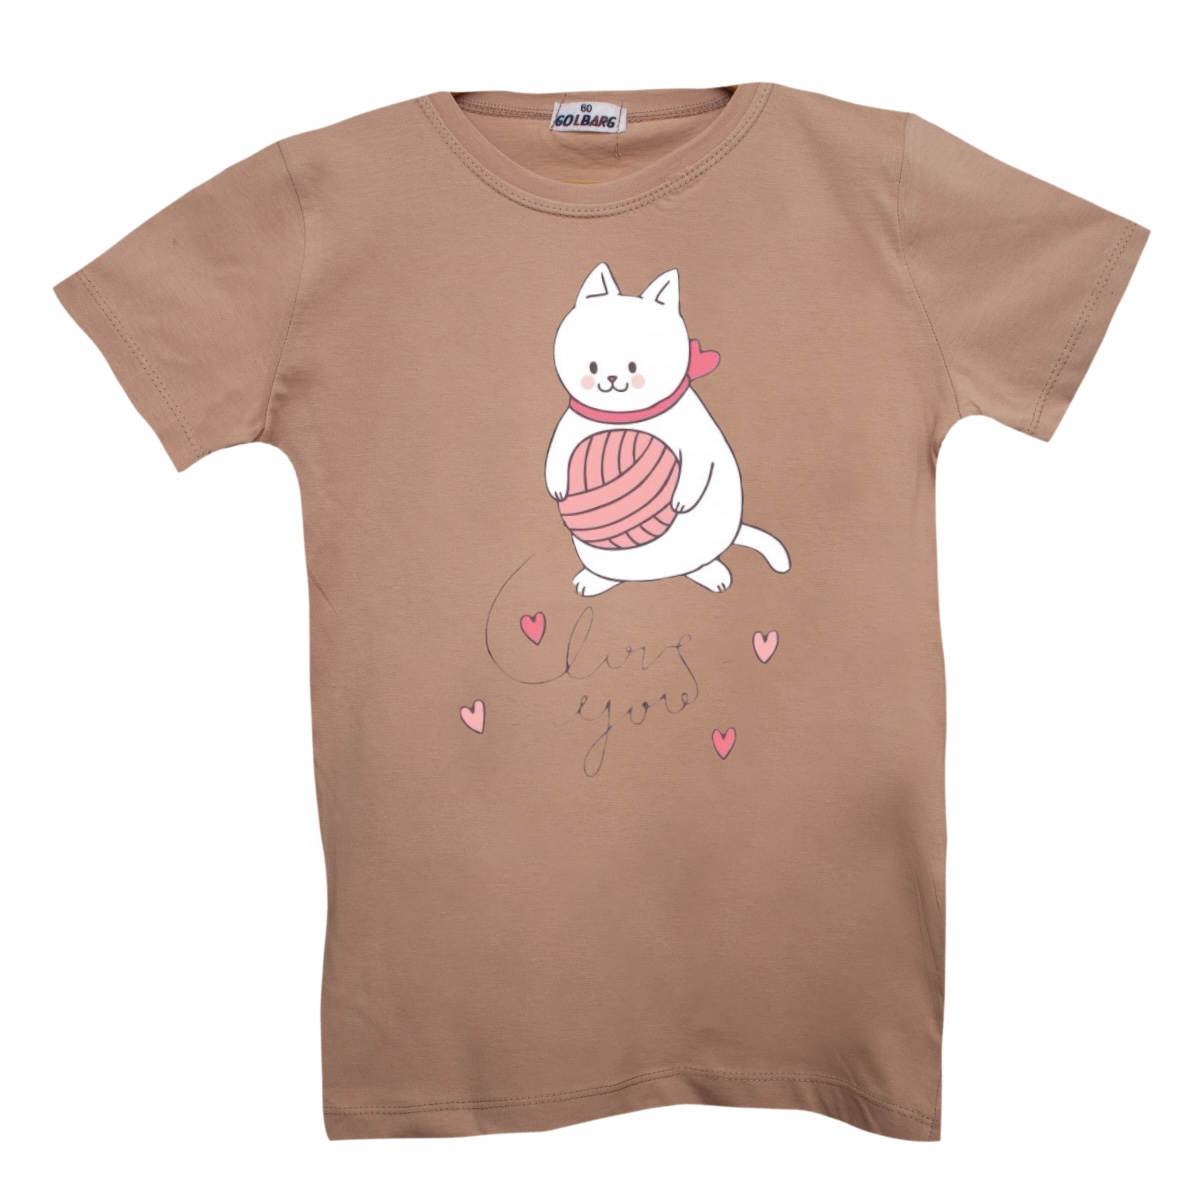 تی شرت بچگانه مدل گربه کد 26